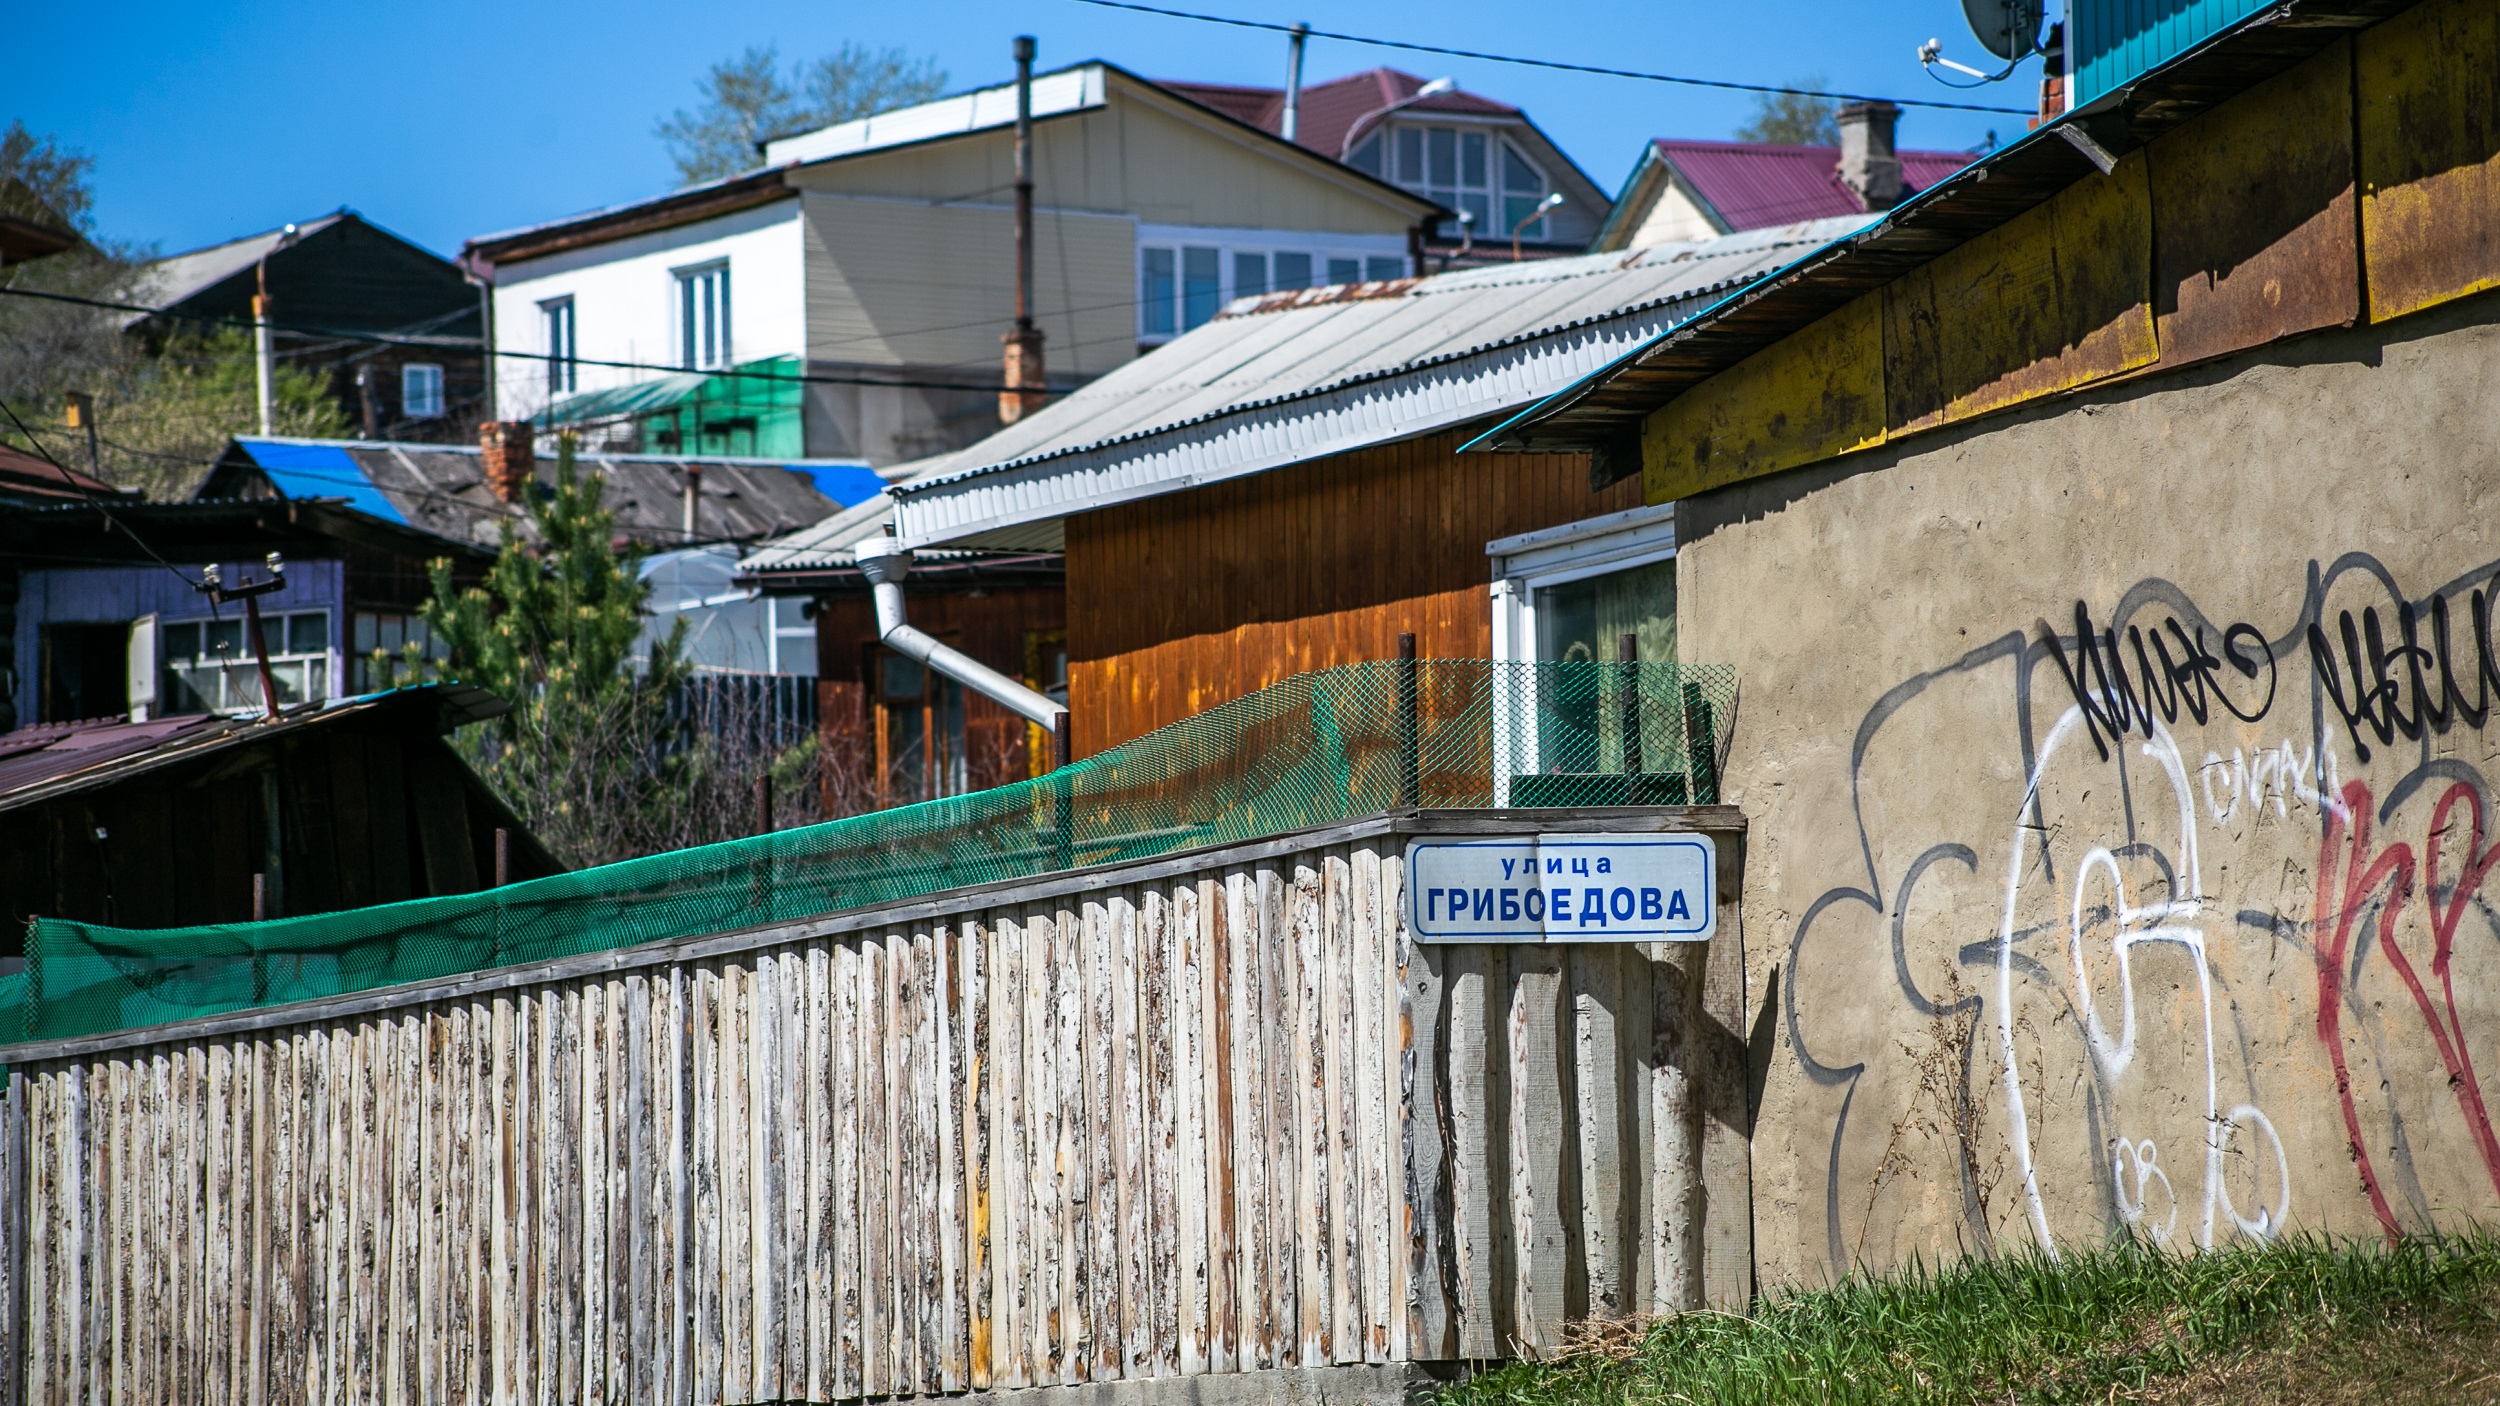 Непарадный Иркутск на Грибоедова: рассматриваем улицу студентов и трамваев